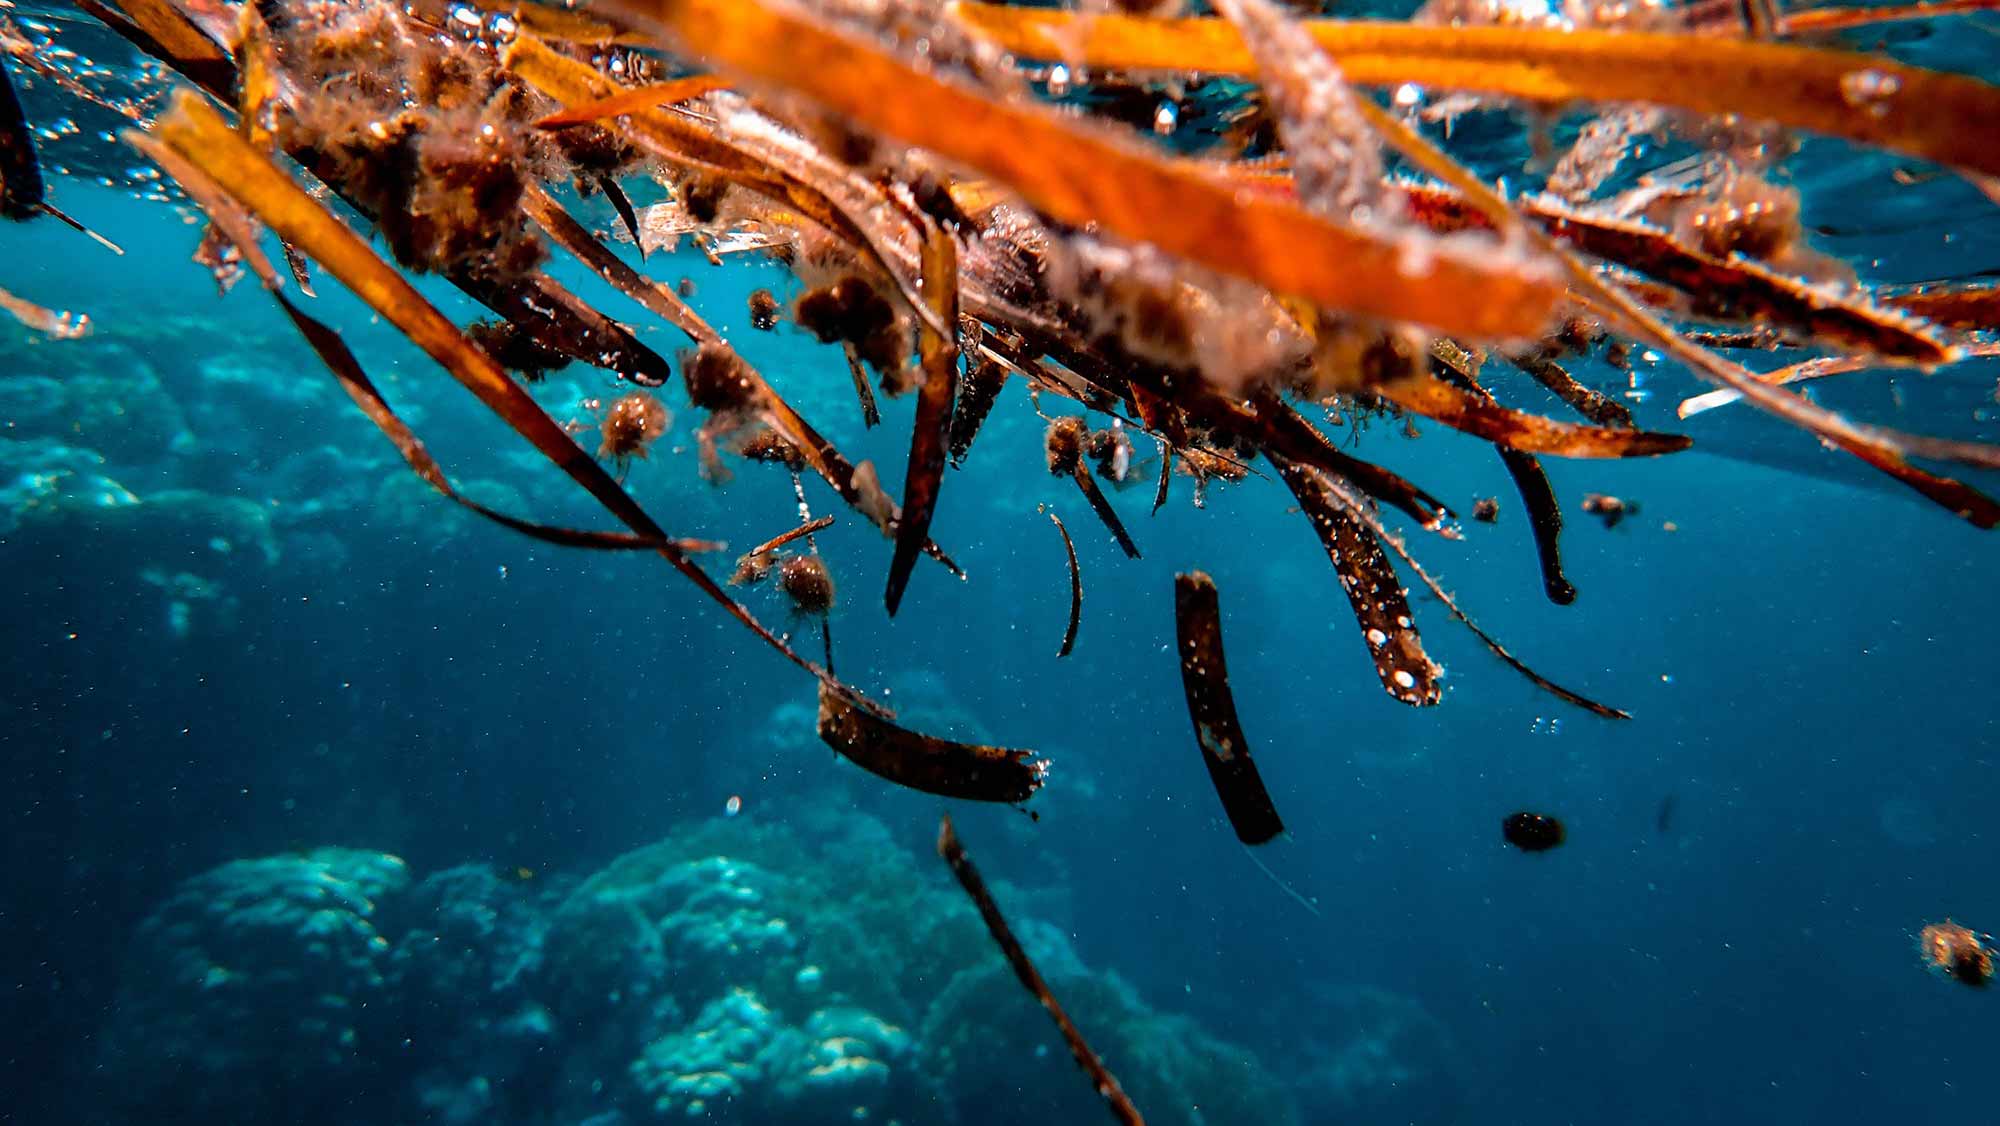 A photo of orange seaweed floating in a deep blue ocean.